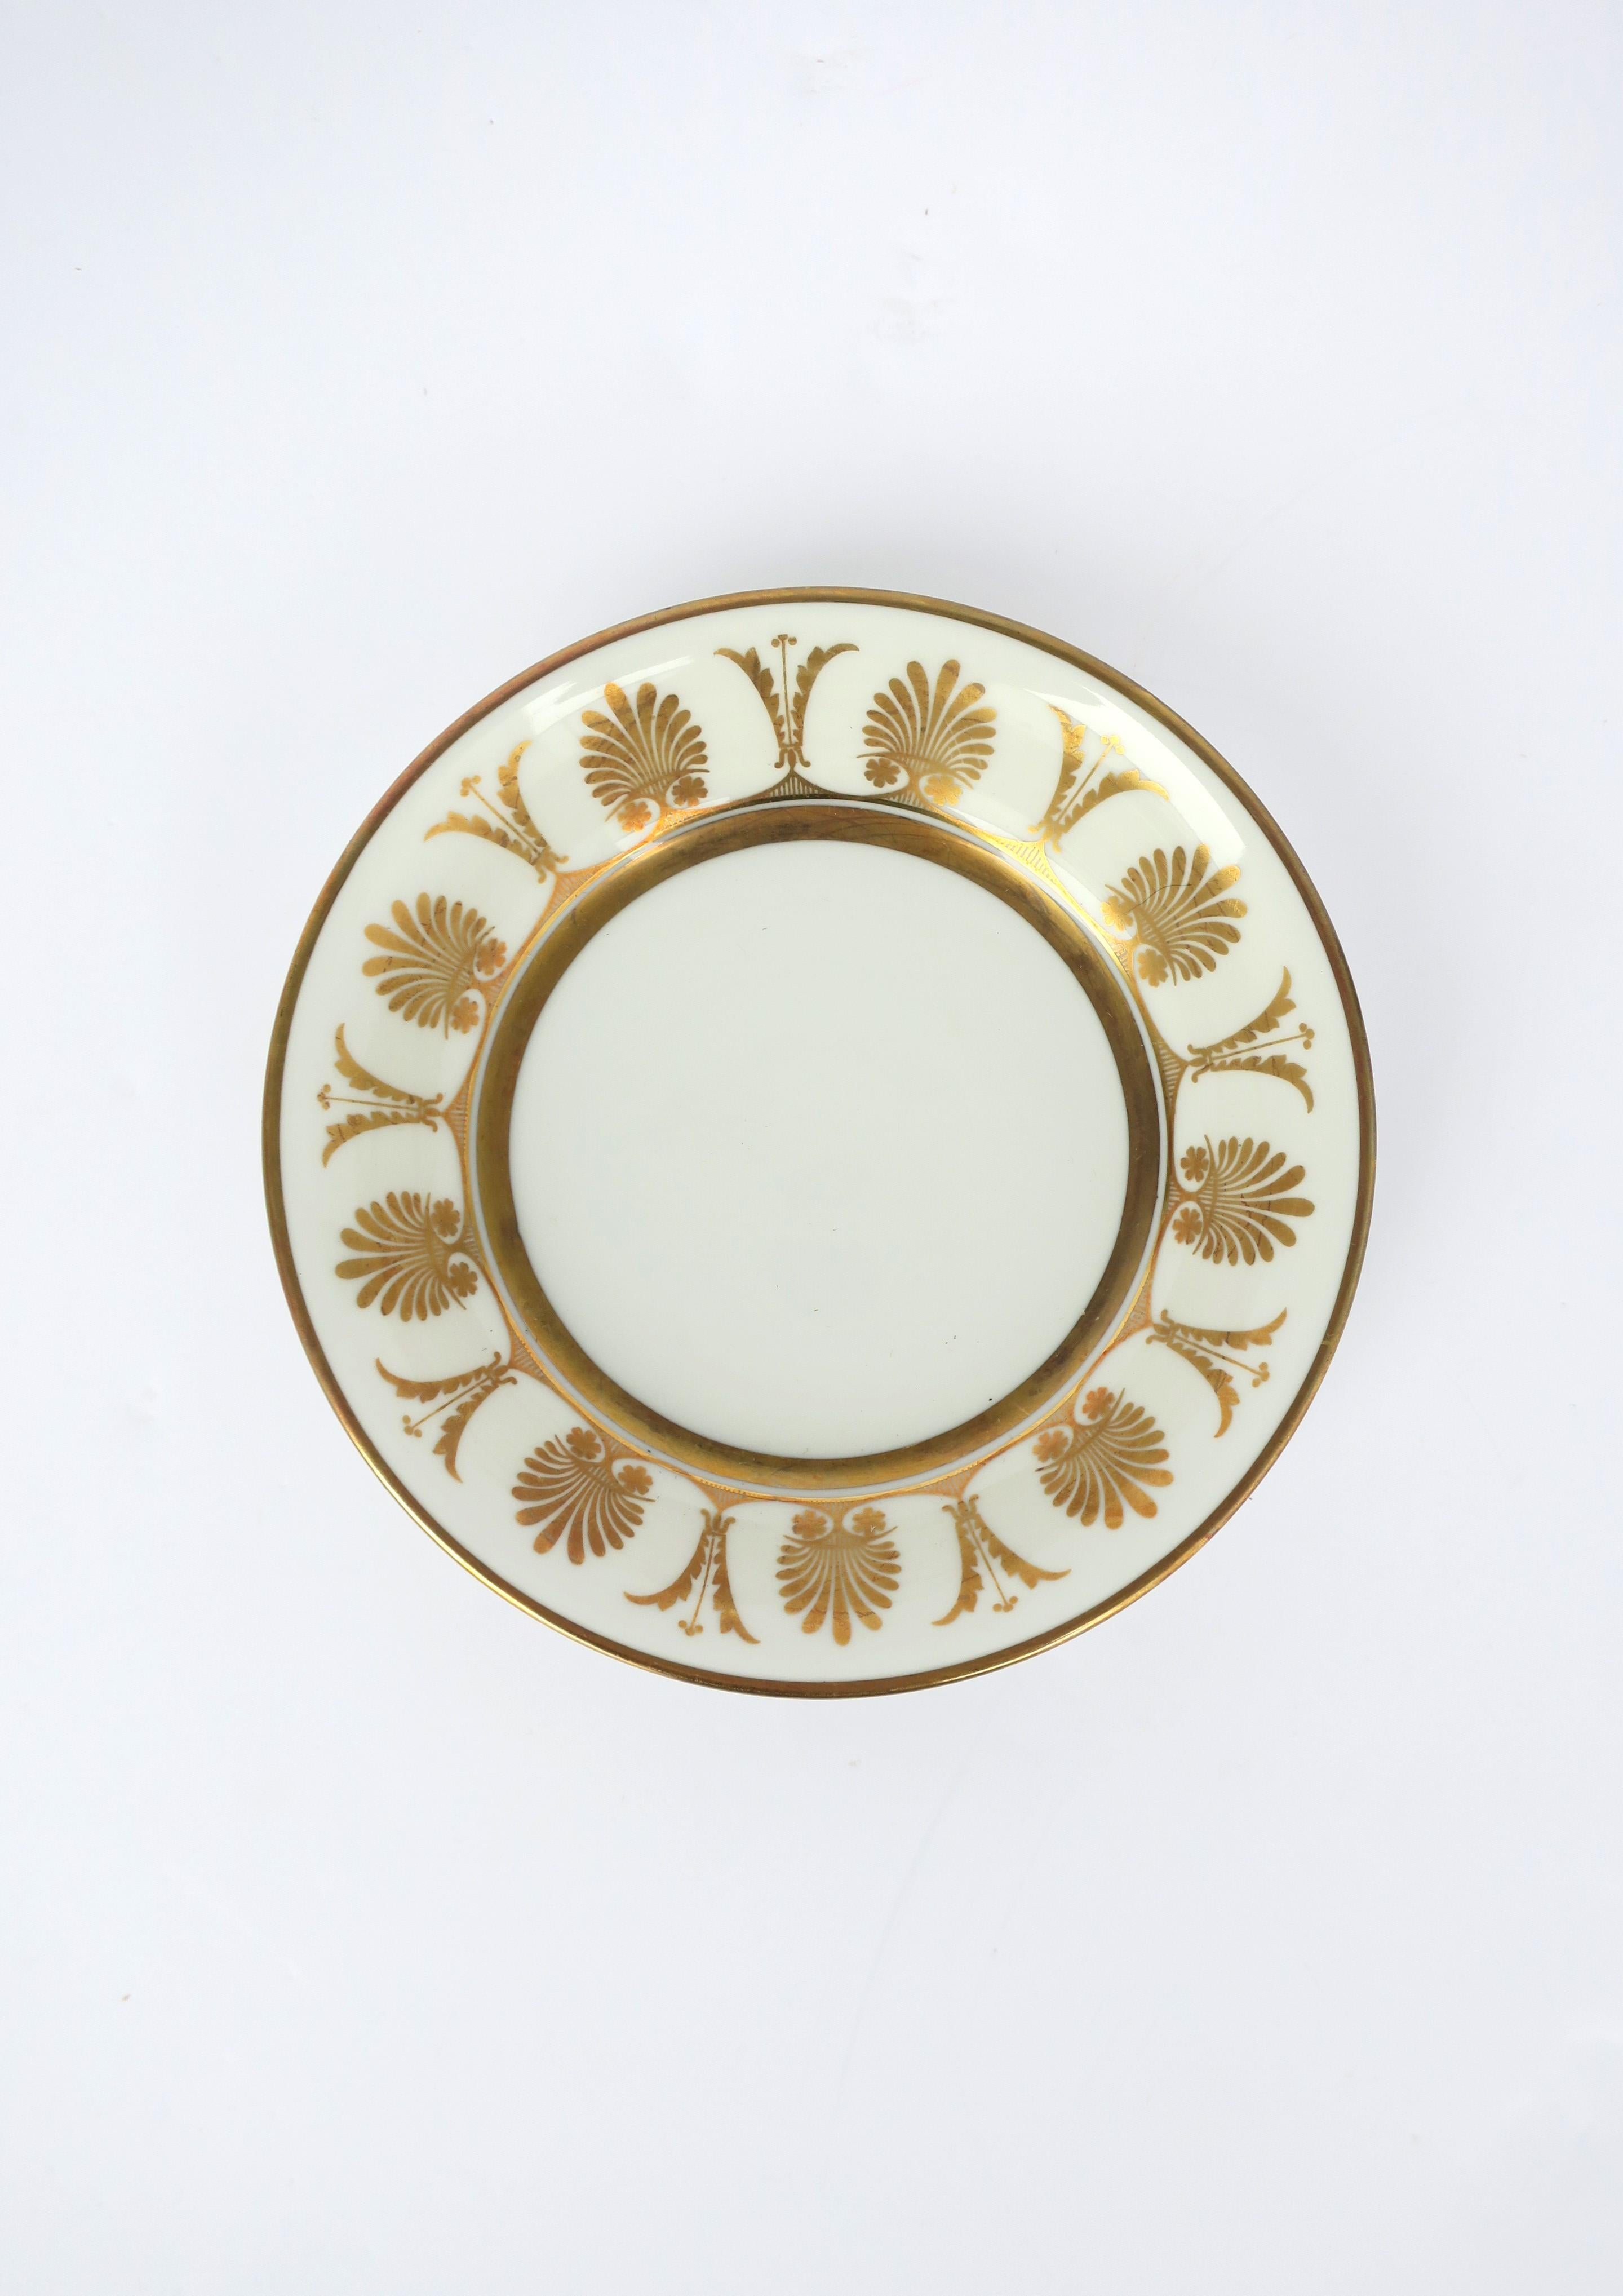 Italienische Schale aus weißem Porzellan mit Goldverzierung des Designers Richard Ginori, Mitte des 20. Jahrhunderts, 1960er Jahre, Italien. Die Schale war wahrscheinlich Teil eines größeren Sets; ich zeige sie jedoch als Schmuckschale